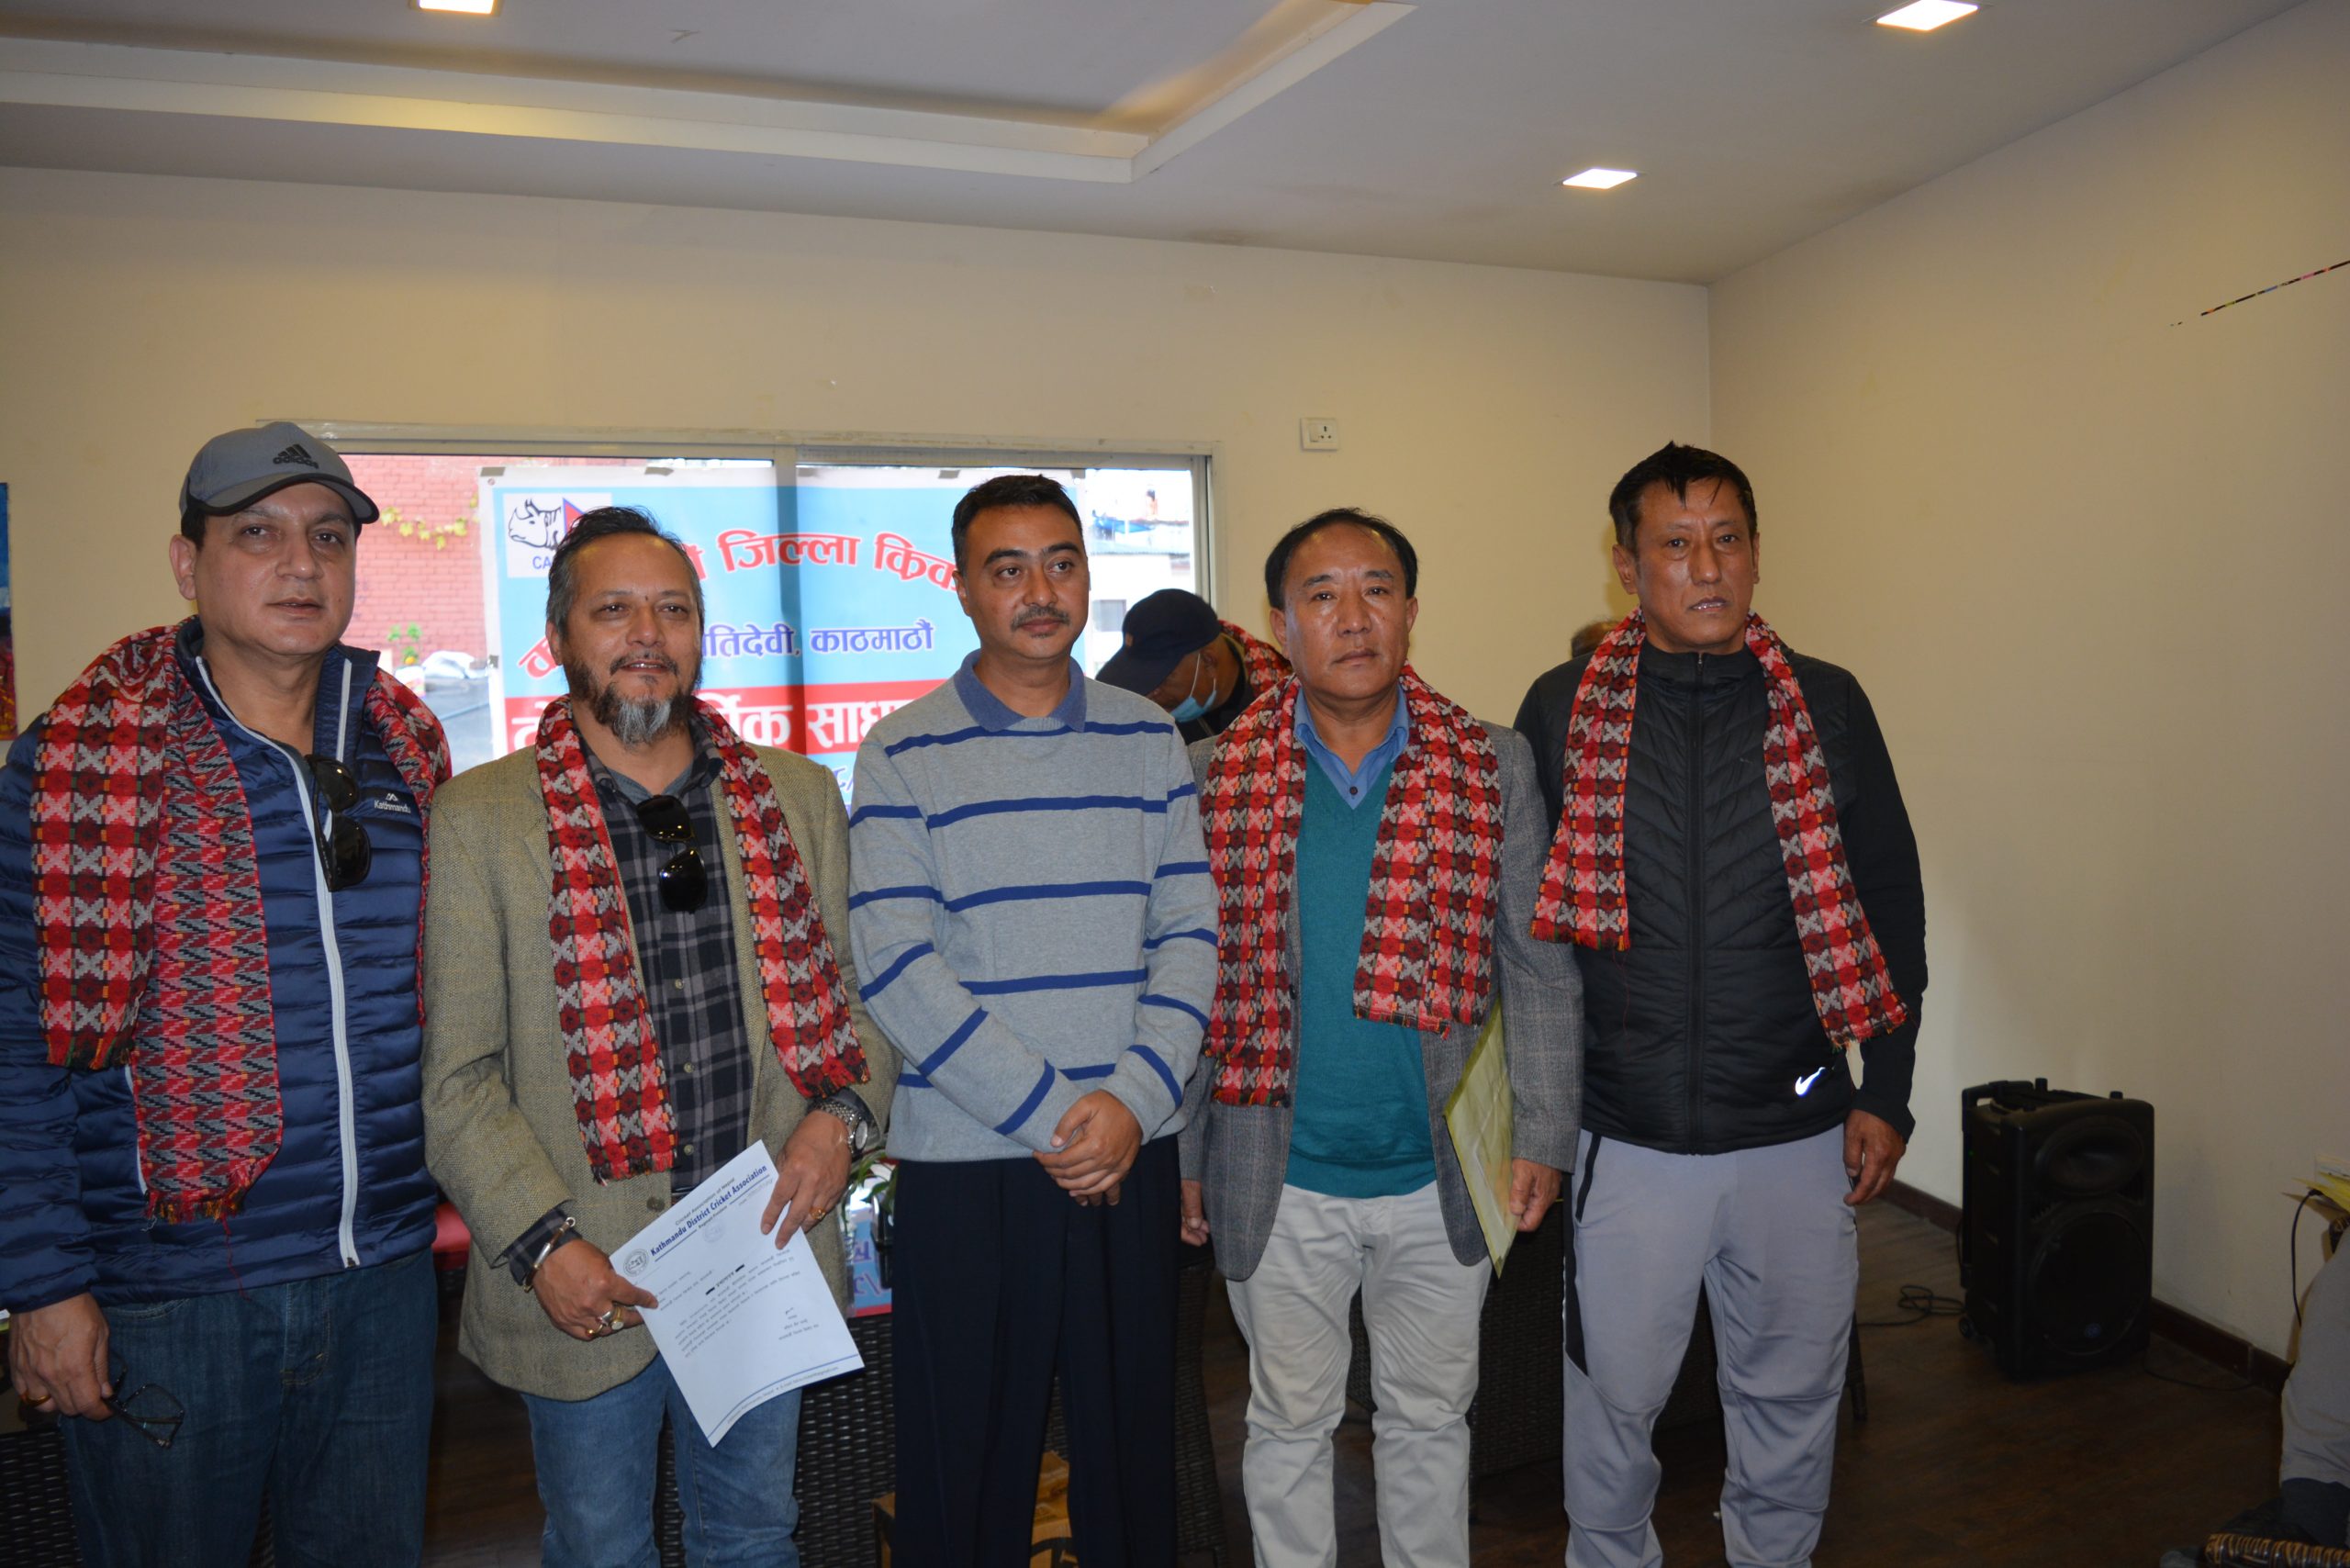 दिवाकर घले र किरण राना काठमाडौं जिल्ला क्रिकेट संघको सदस्यमा नियुक्त